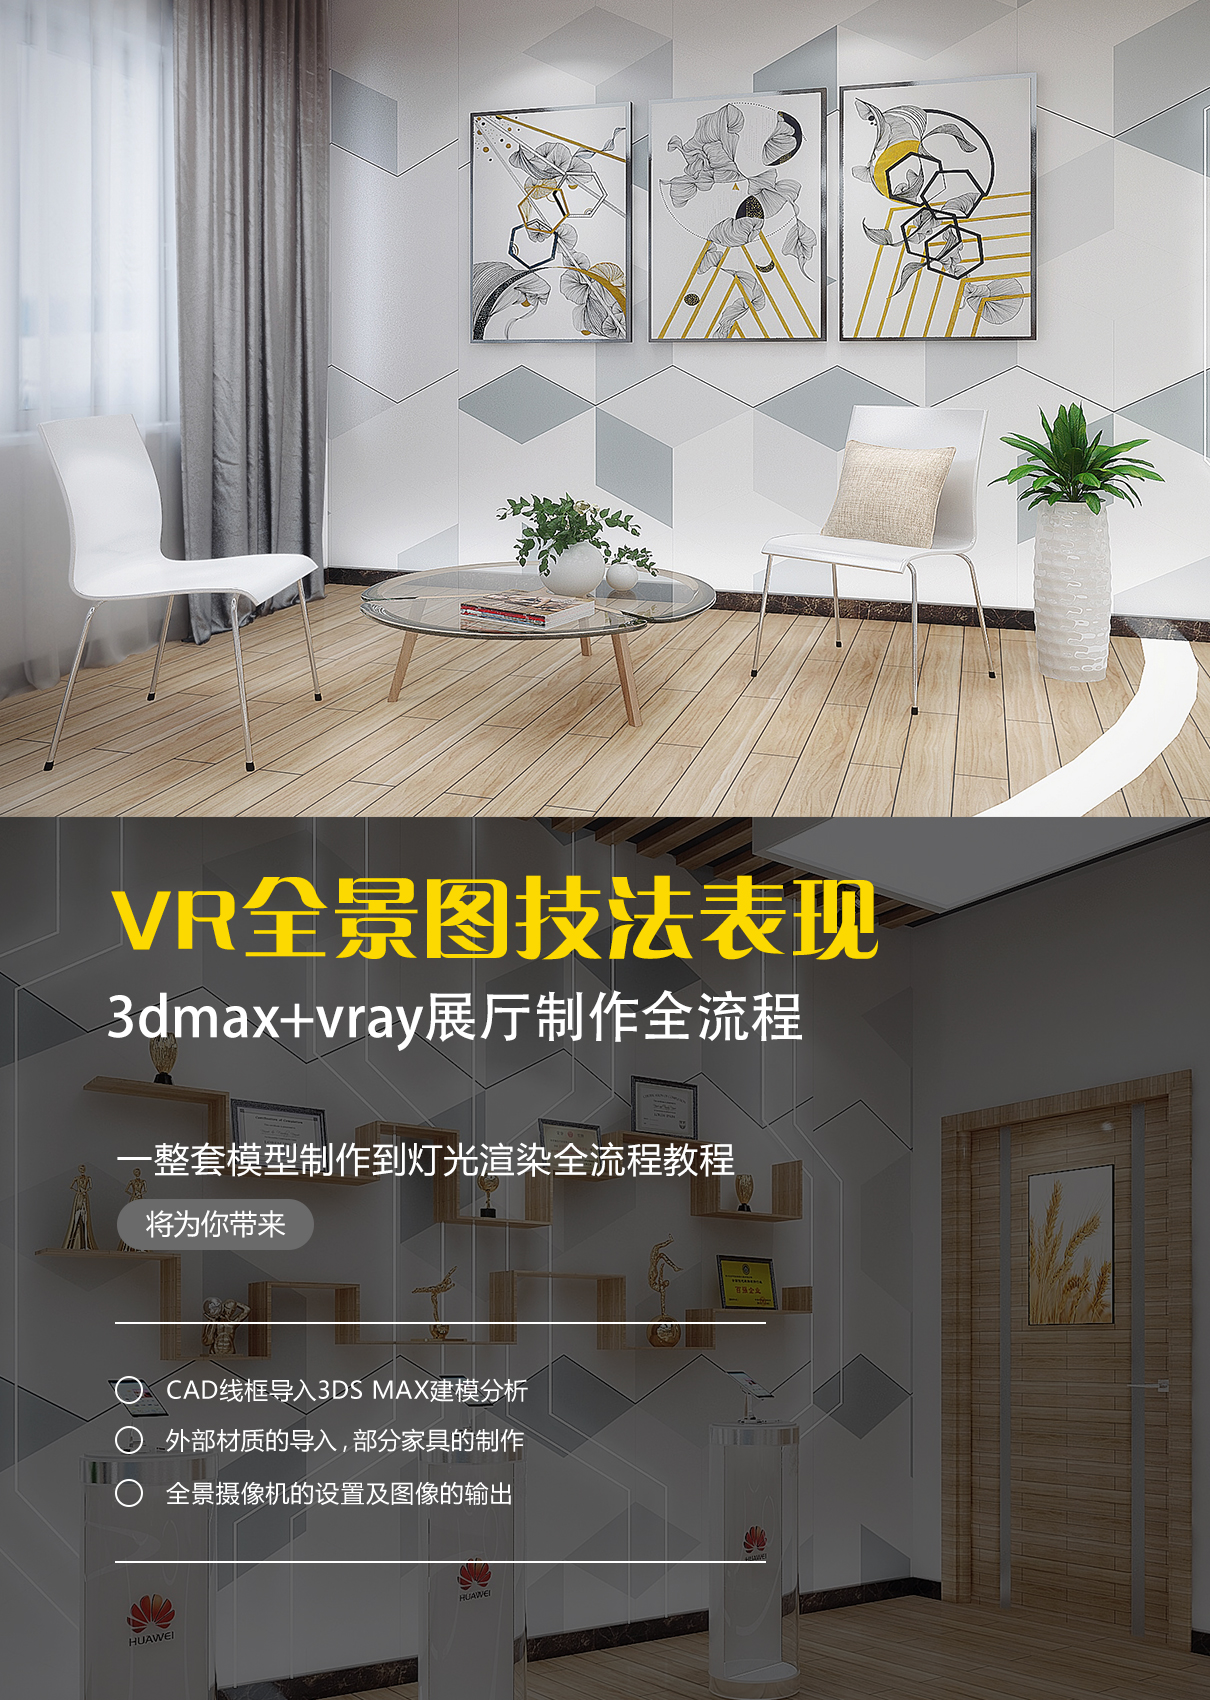 用3dsMax+vray制作展厅VR全景图